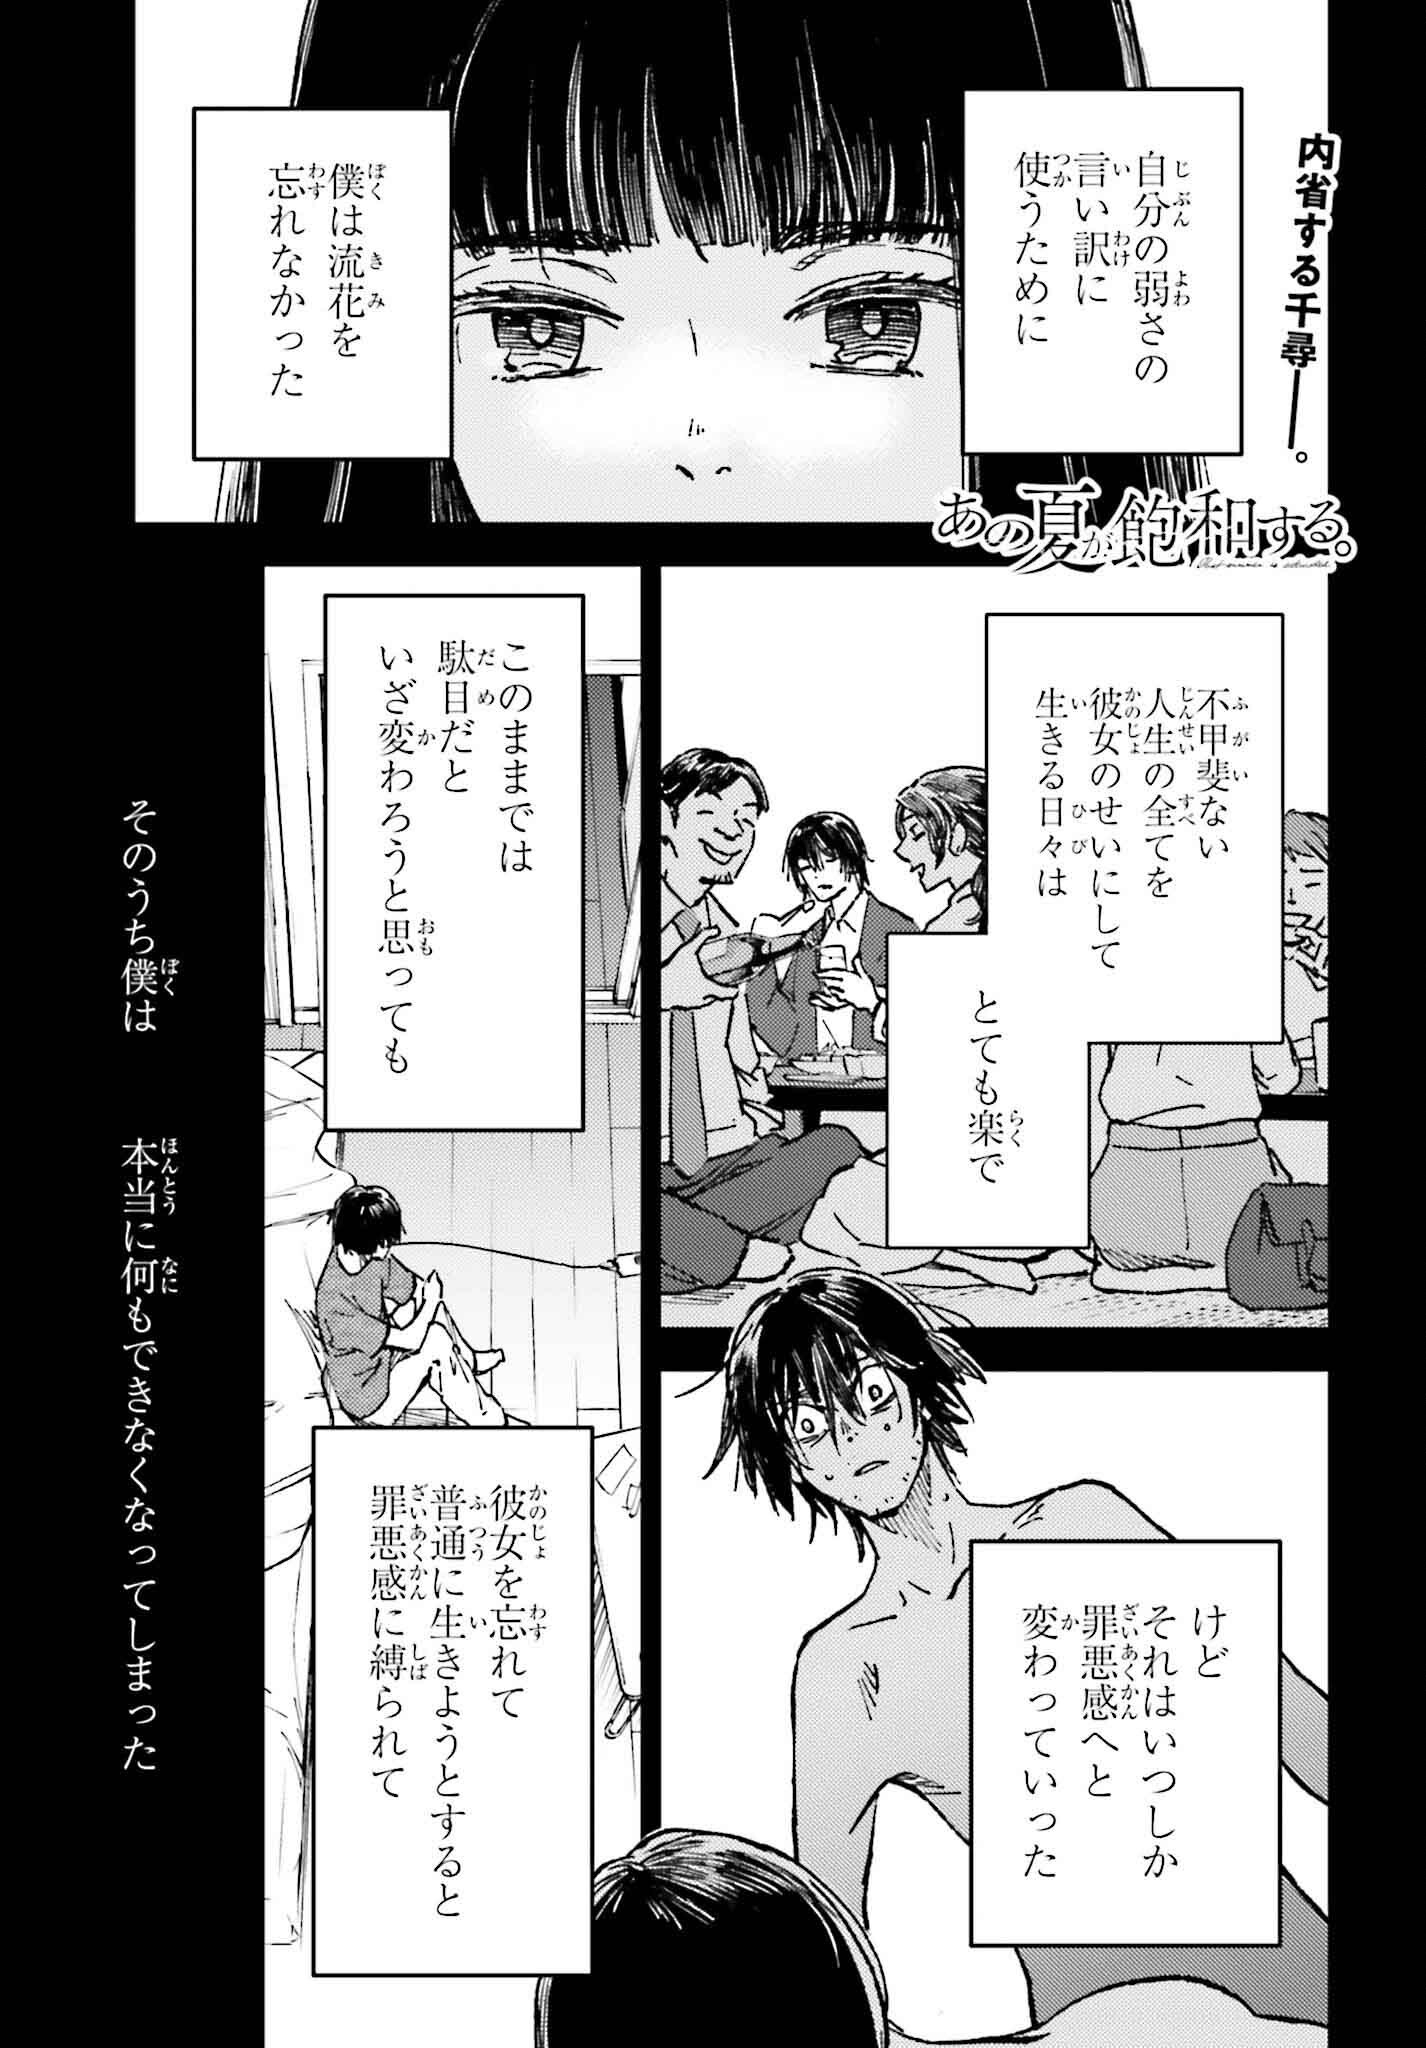 Ano Natsu ga Houwa suru. - Chapter 18 - Page 1